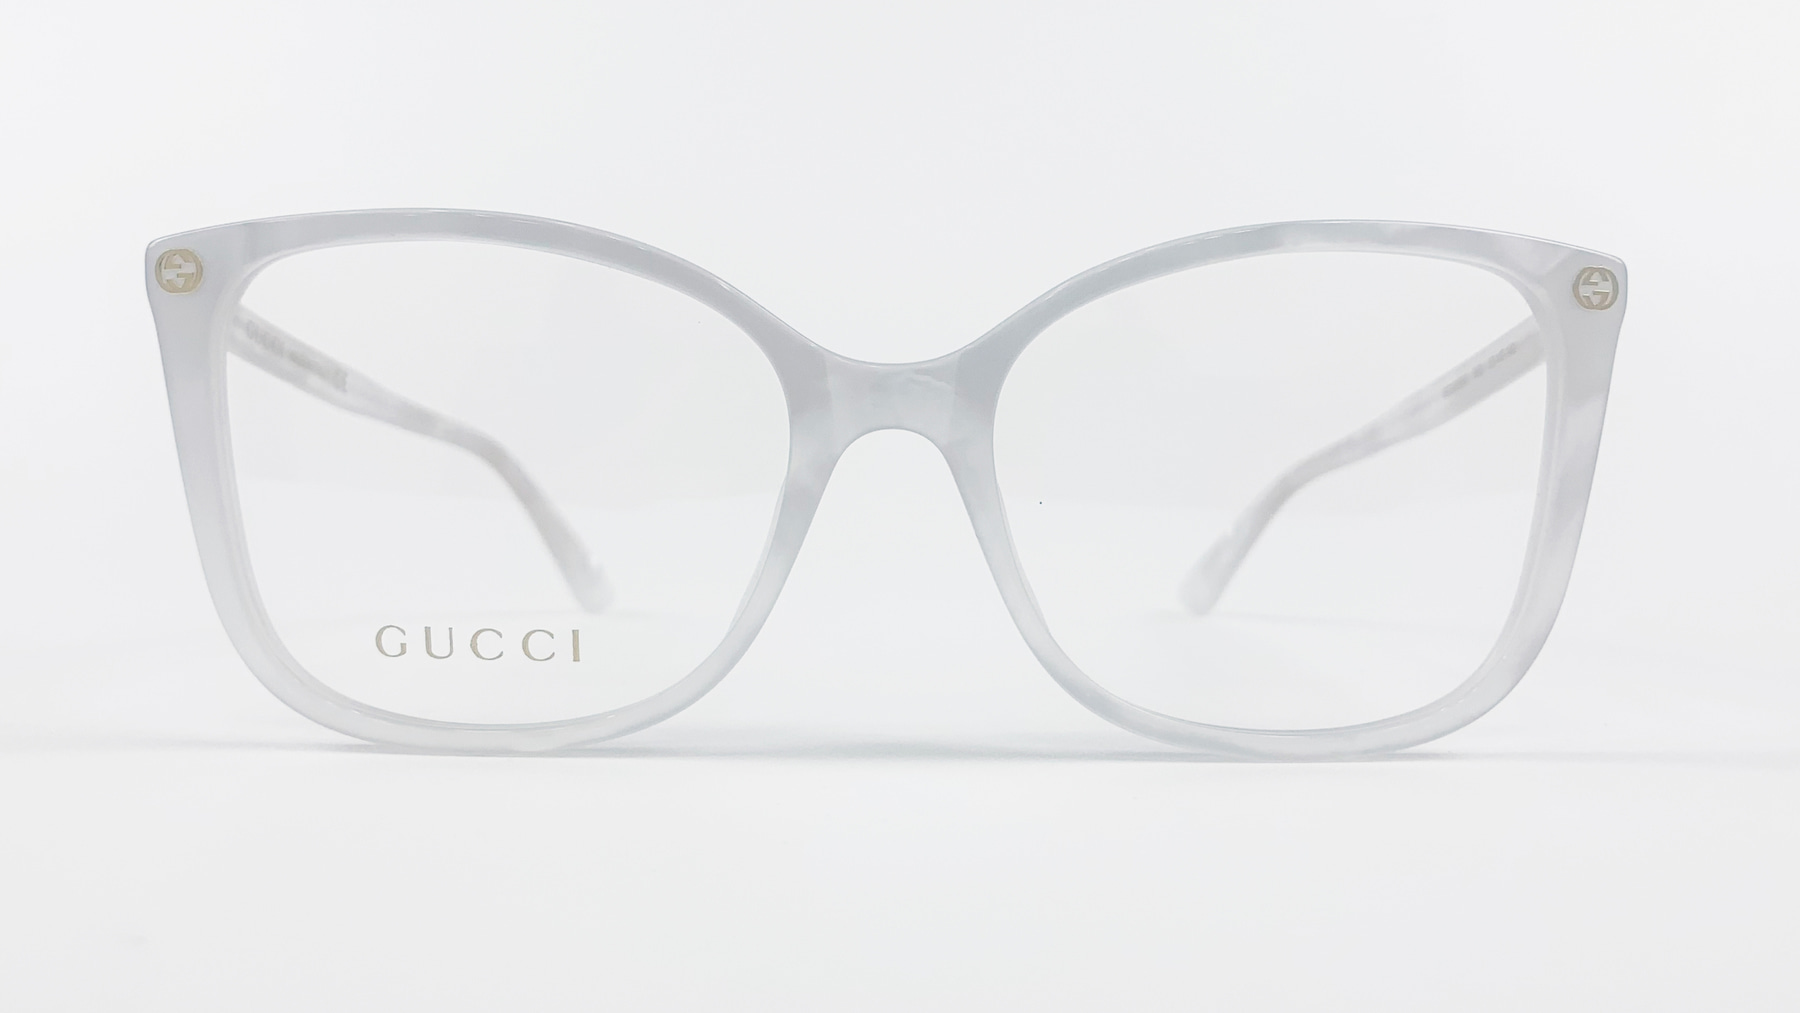 GUCCI GG0026O, Korean glasses, sunglasses, eyeglasses, glasses